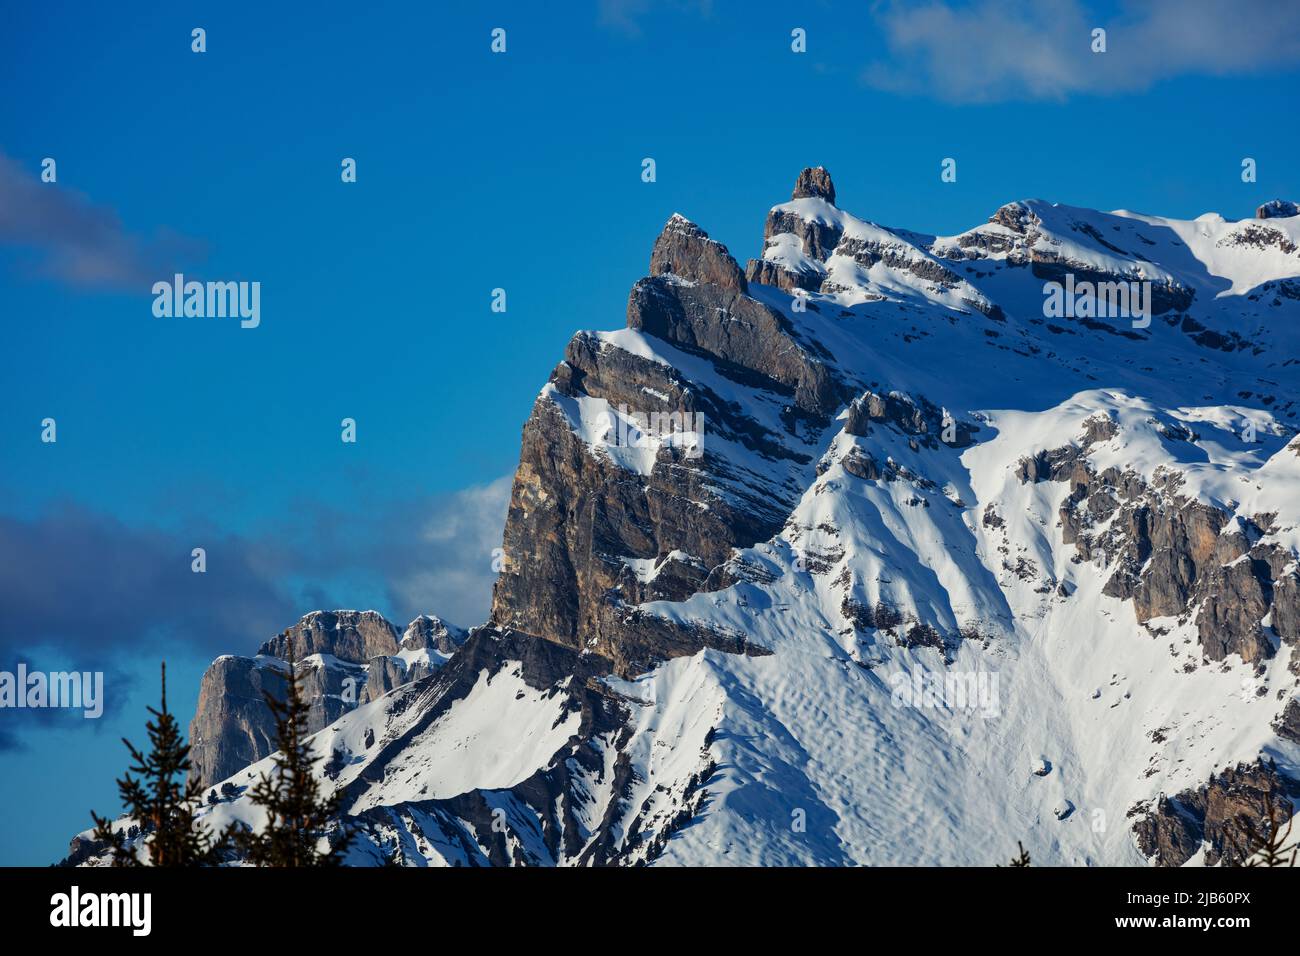 Mont Blanc mountain peak Aiguille du Midi in the French Alps Stock Photo